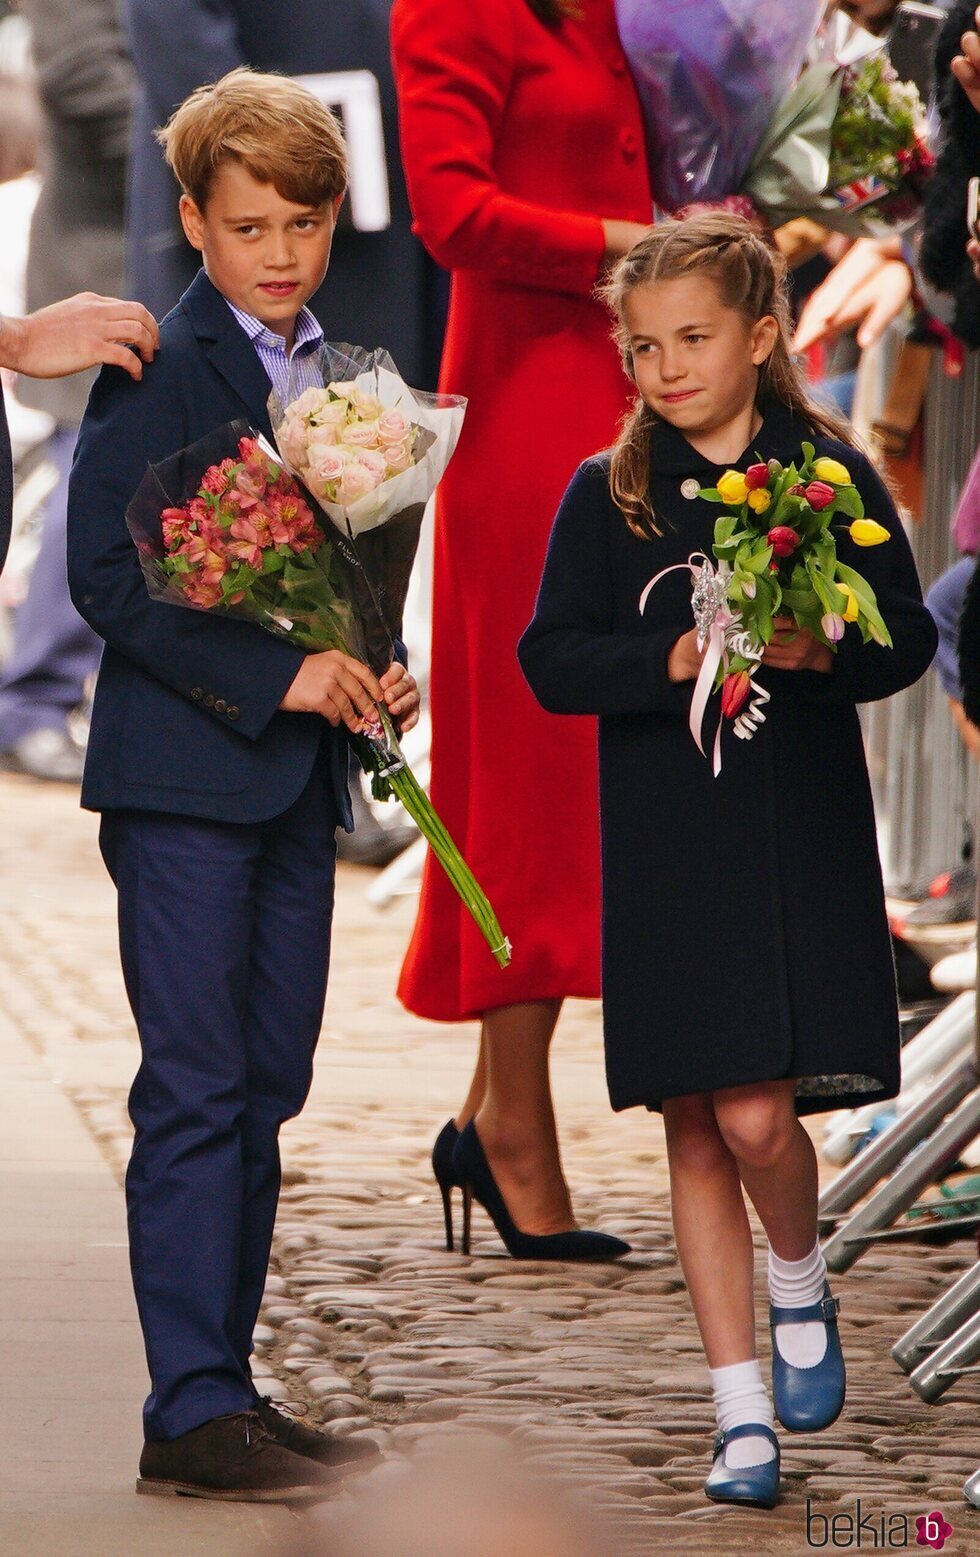 El Príncipe Jorge y la Princesa Carlota con ramos de flores en su visita a Gales por el Jubileo de Platino